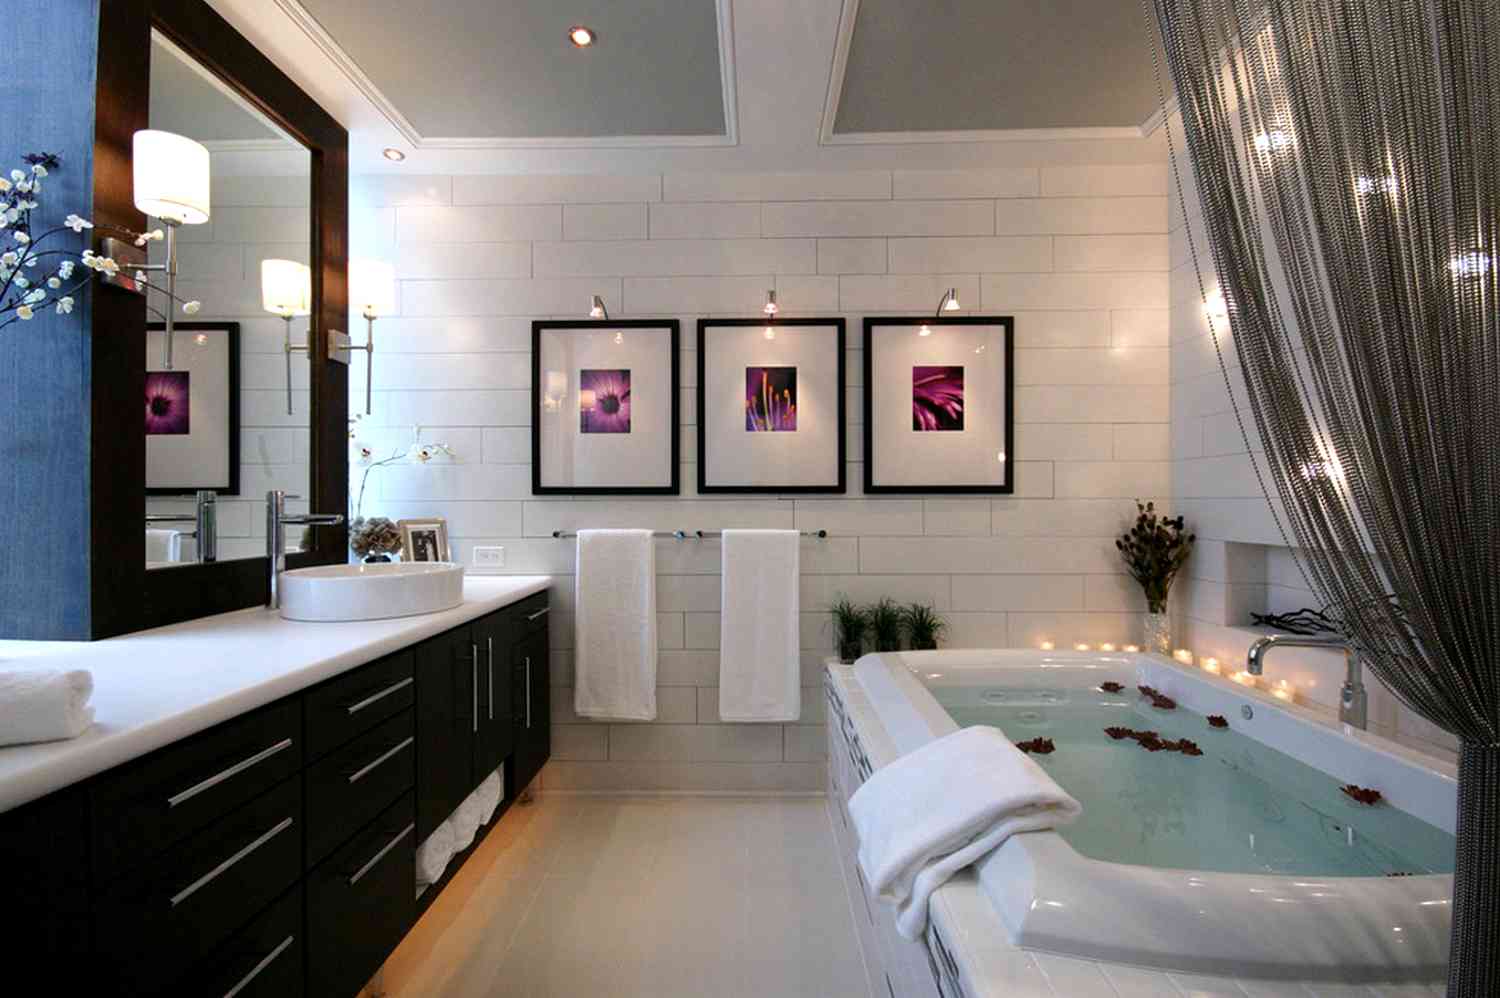 Ванной комната как красиво сделать. Ванная комната. Красивая ванная комната. Современная ванная комната. Интерьер ванной комнаты.